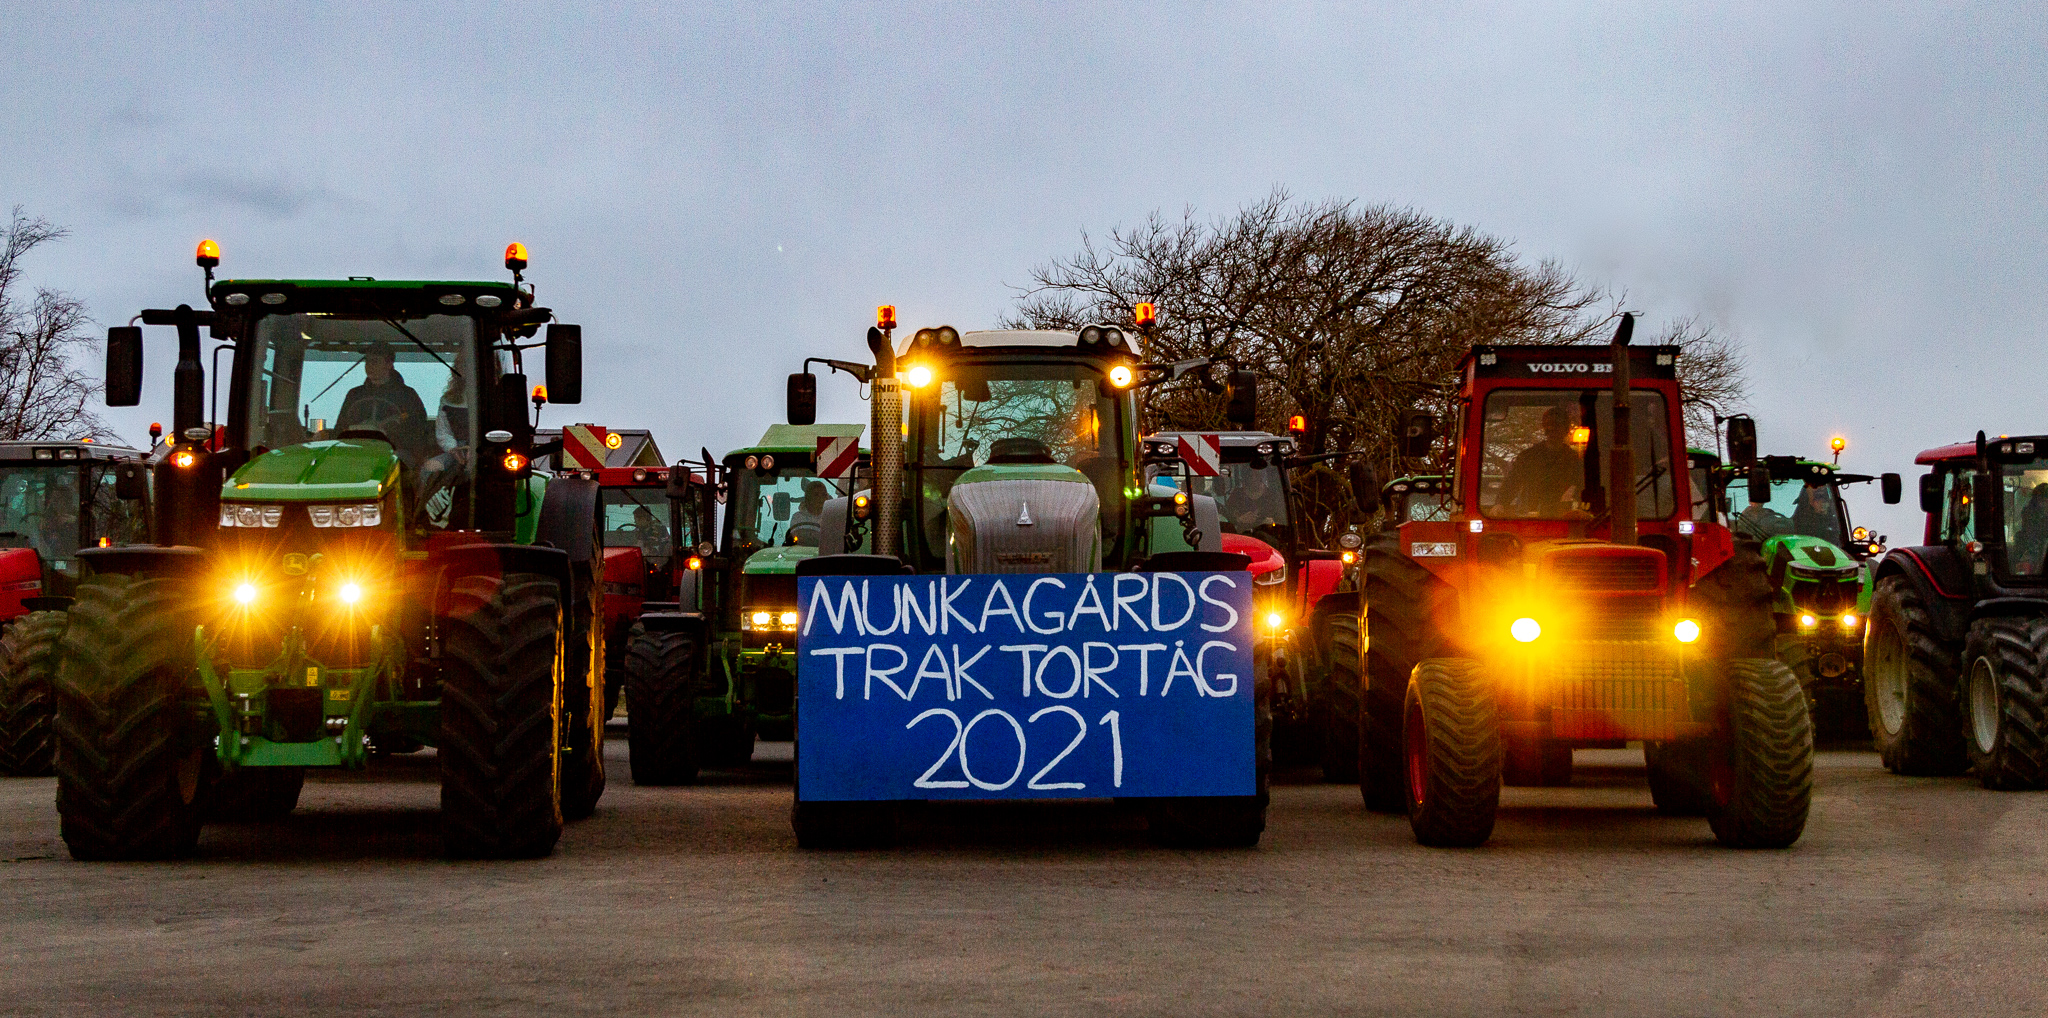 Du visar för närvarande Munkagårdsgymnasiets Traktortåg 2021